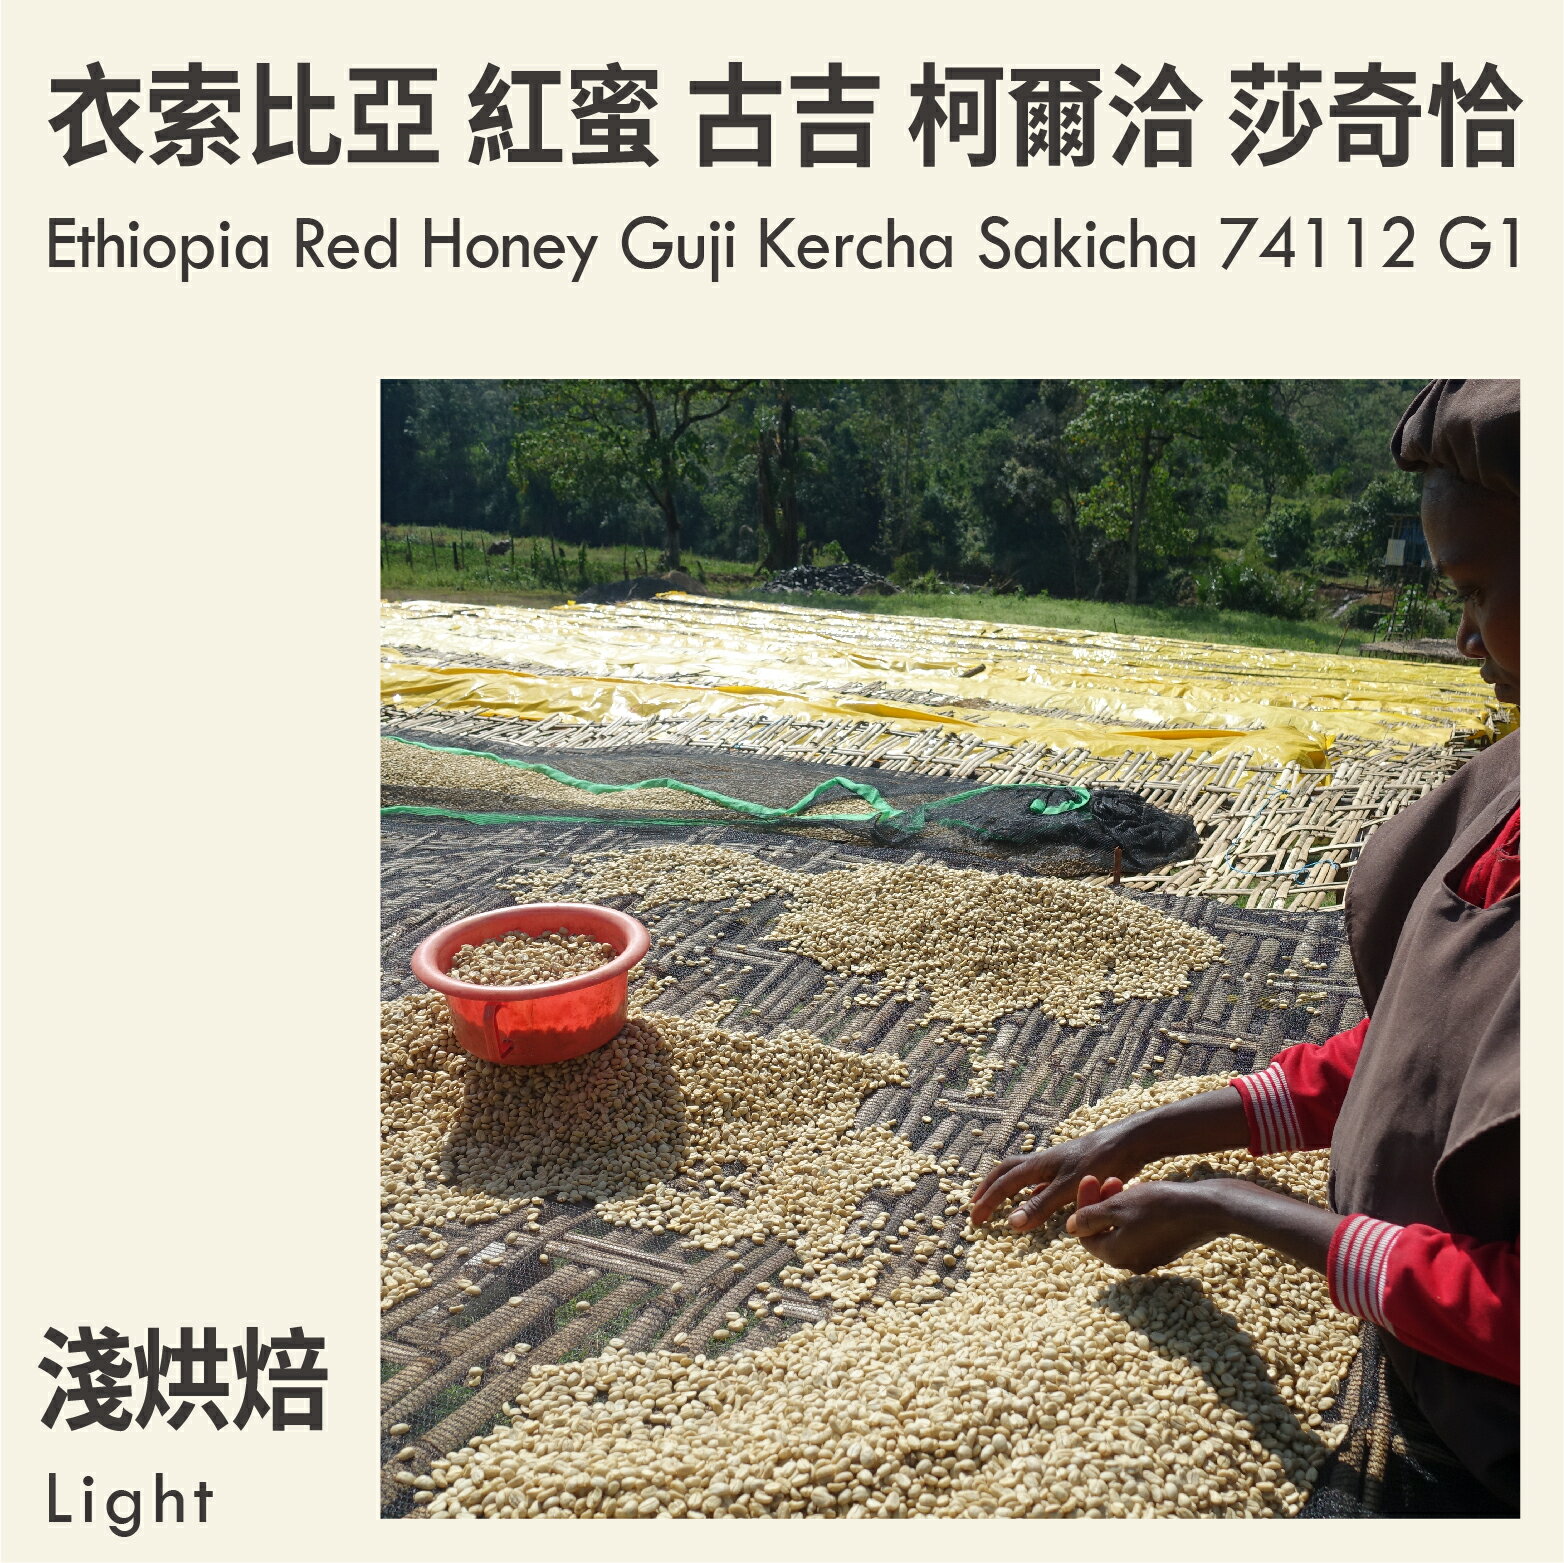 KaKaLove 咖啡-衣索比亞 紅蜜 古吉 柯爾洽 莎奇恰 74112 G1 0.5磅